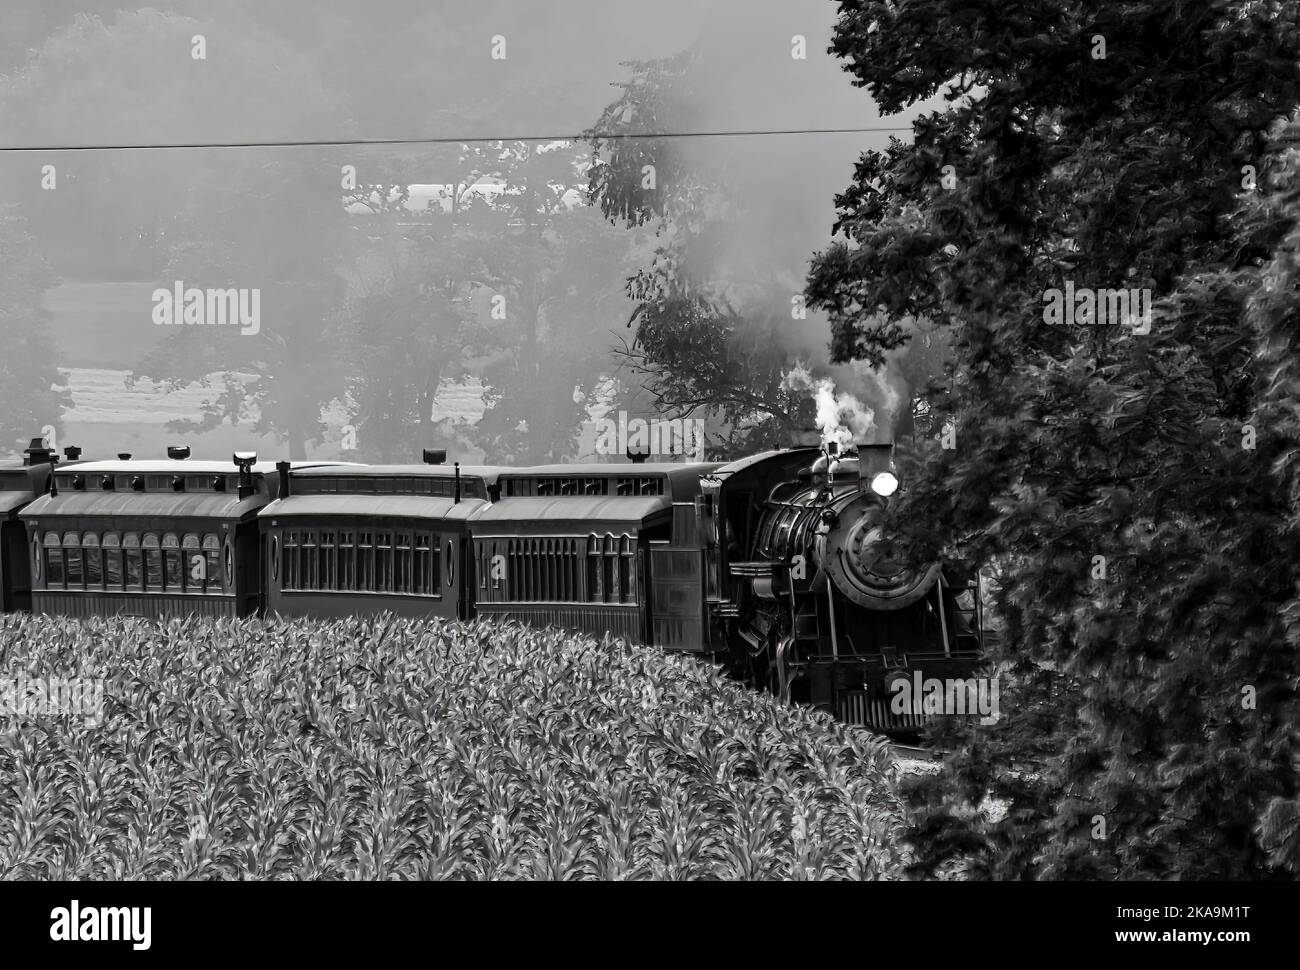 Vue d'un train de voyageurs à vapeur restauré qui s'approche d'une courbe avec de la fumée et de la vapeur en noir et blanc Banque D'Images